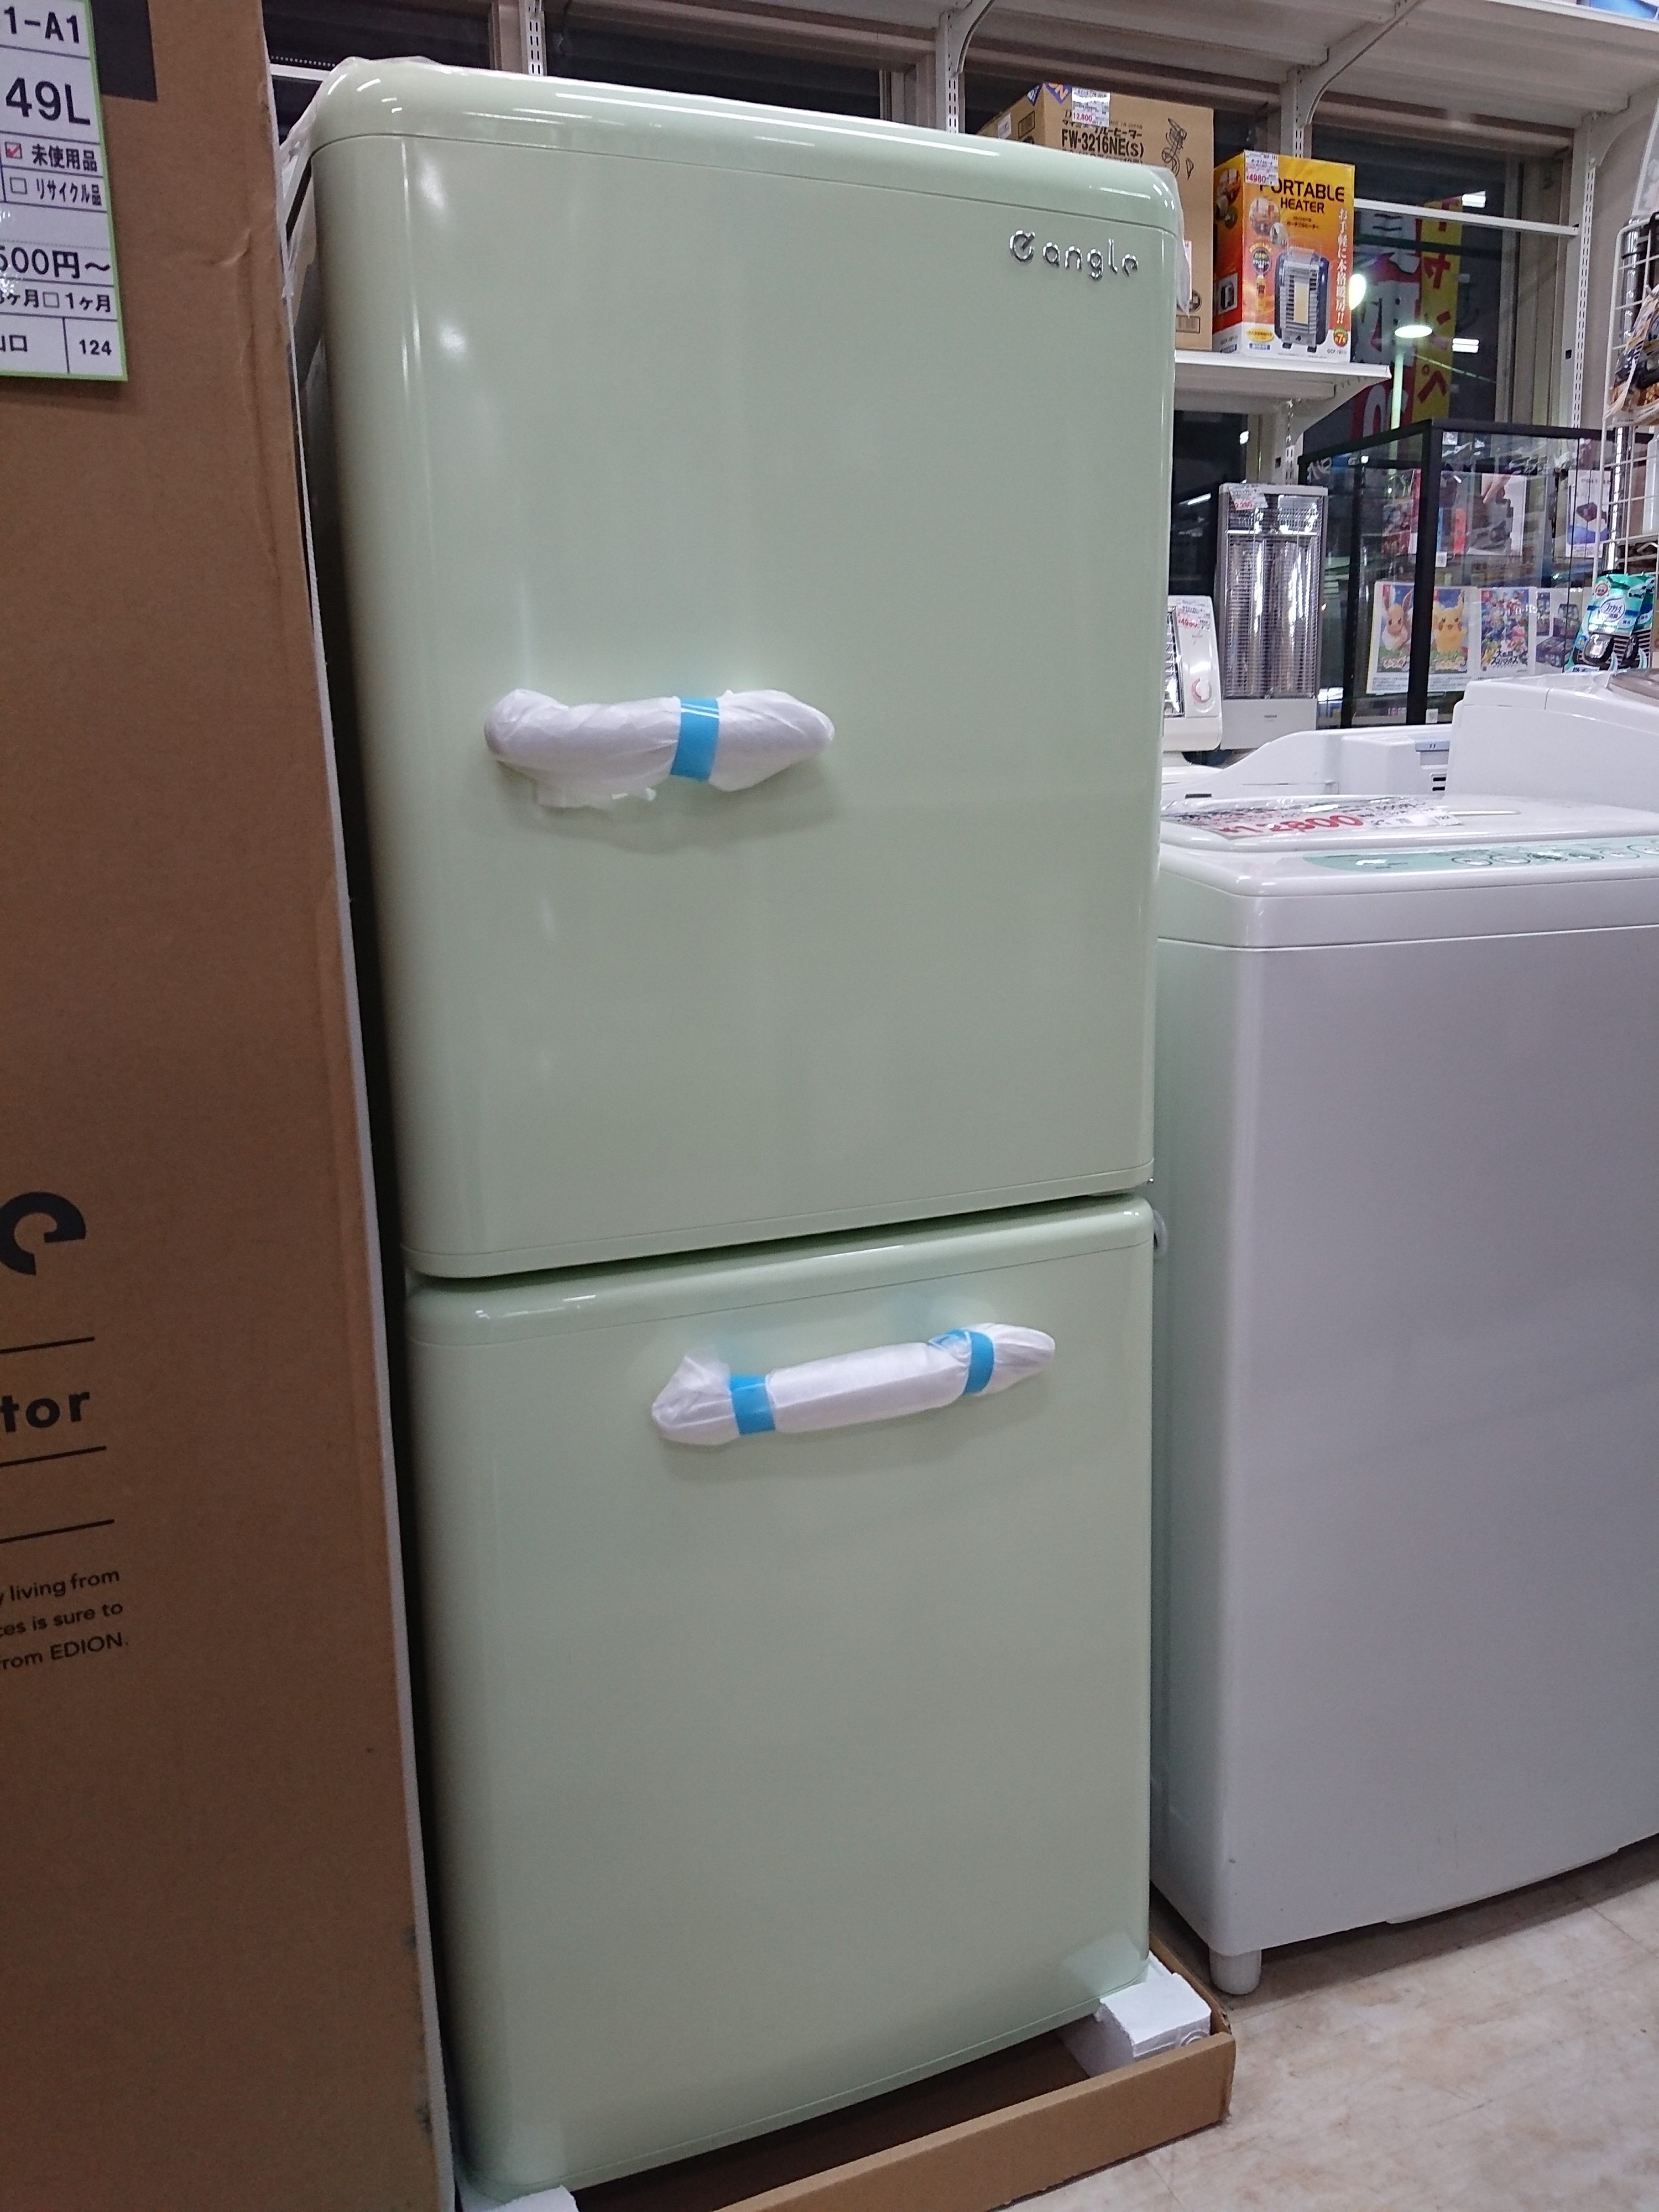 レトロデザイン e CH97 EDION エディオン 2ドア冷凍冷蔵庫 angle ANG-RE151-A1 149L 2019年製 大きな